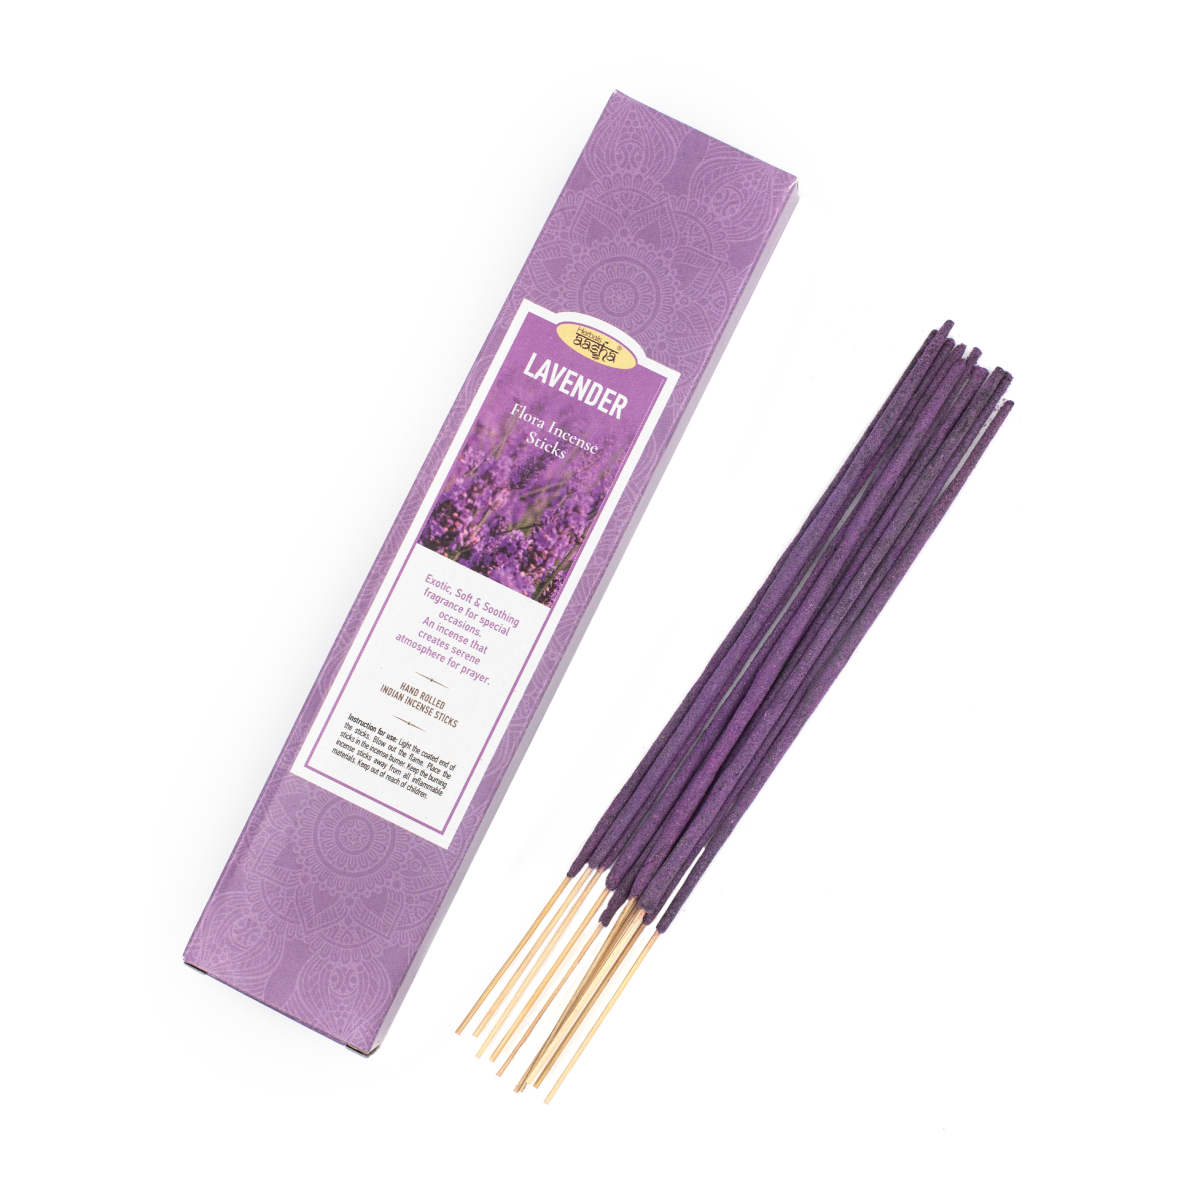 Ароматические палочки Aasha Herbals Лаванда (Lavender), 10 шт крабовые палочки vici охлажденные 220 гр